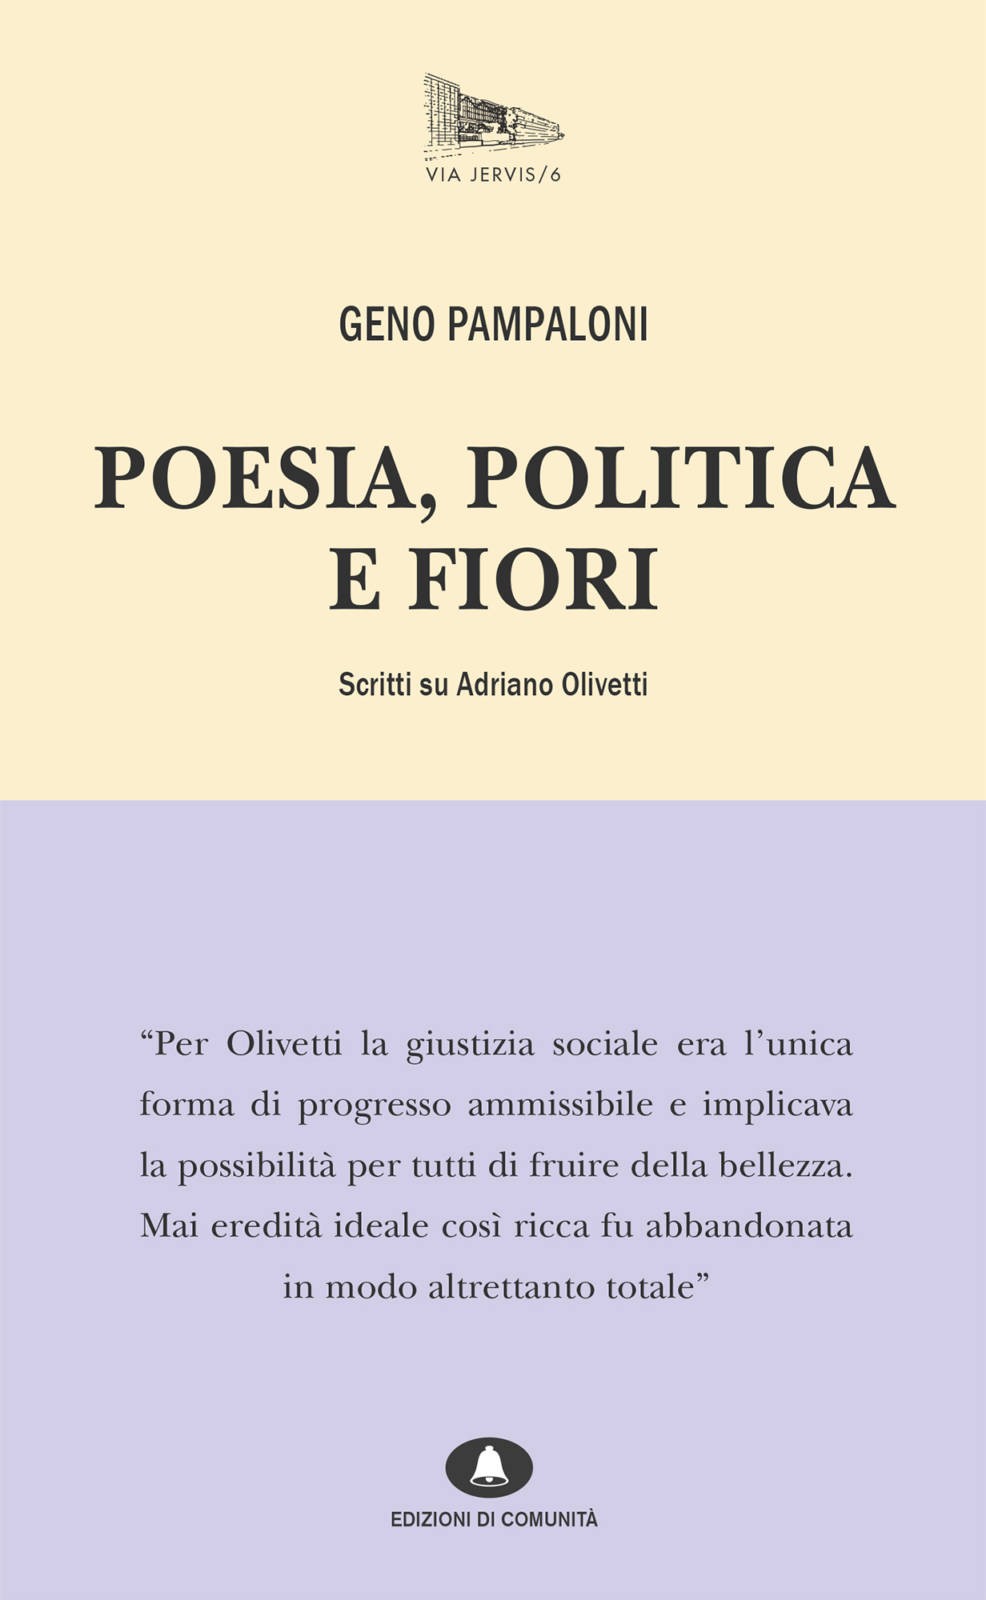 vj6-poesia-politica-fiori-cover.jpg